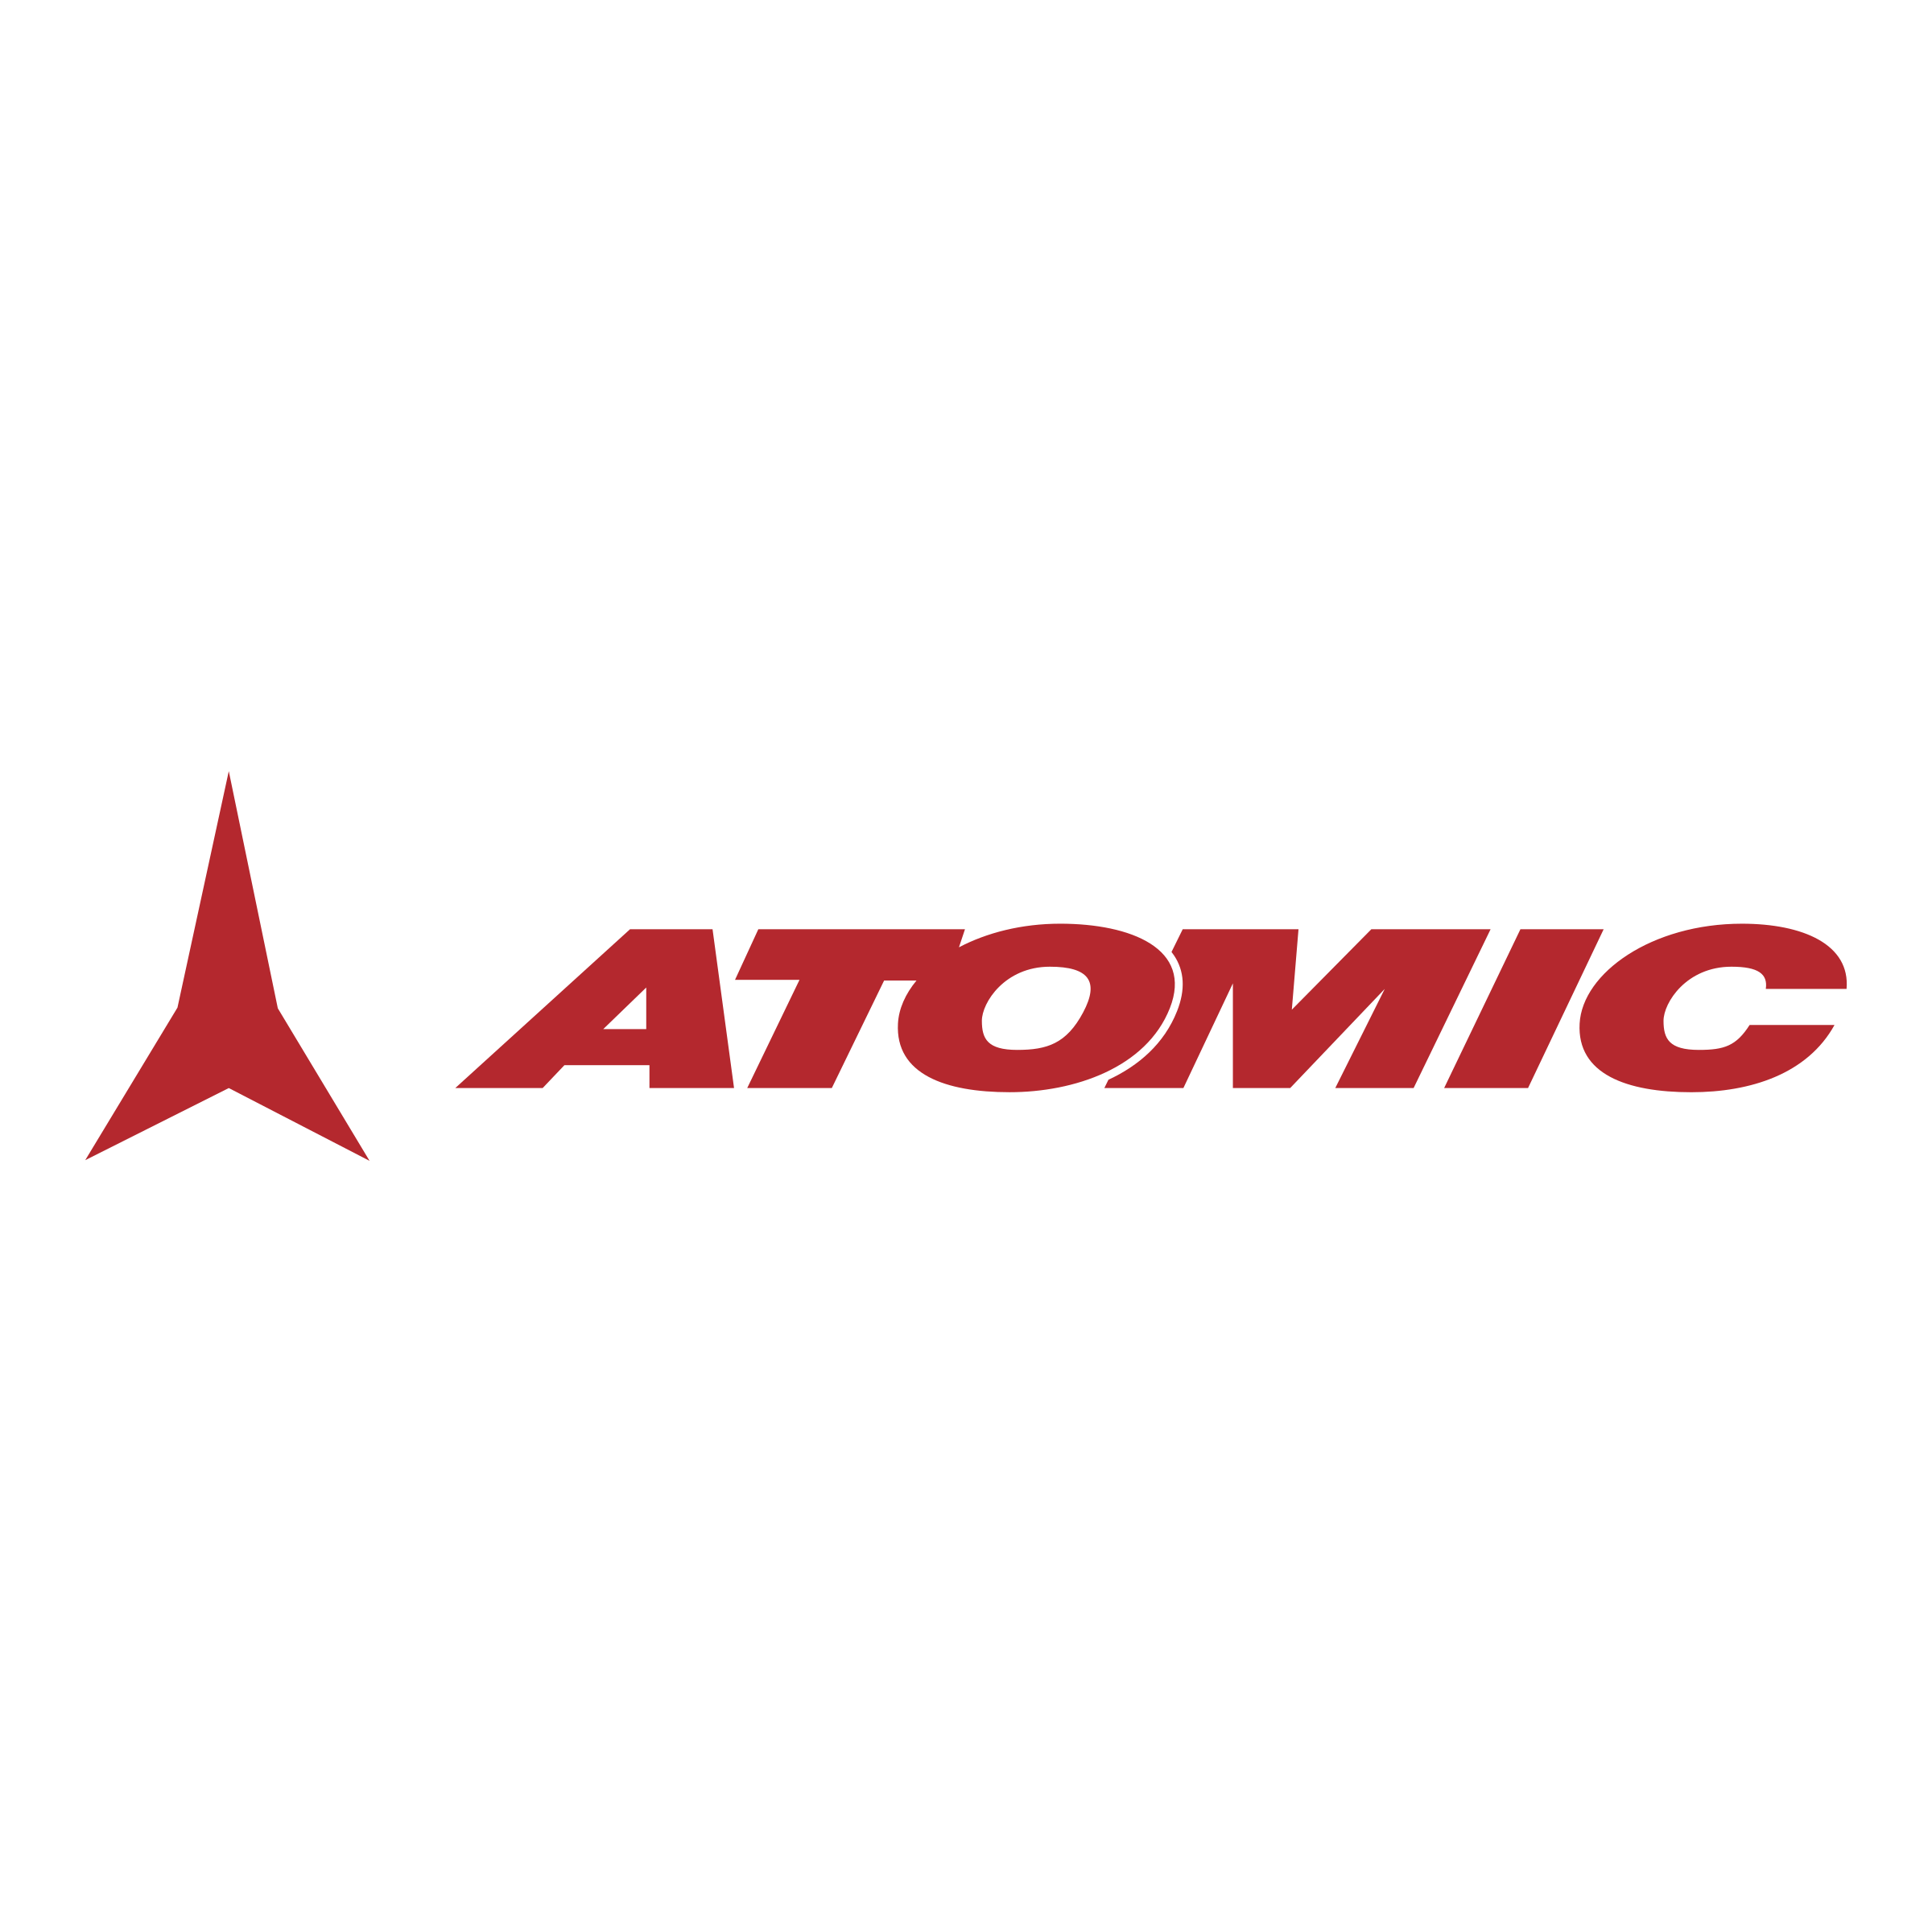 Atomic Logo PNG - 175299